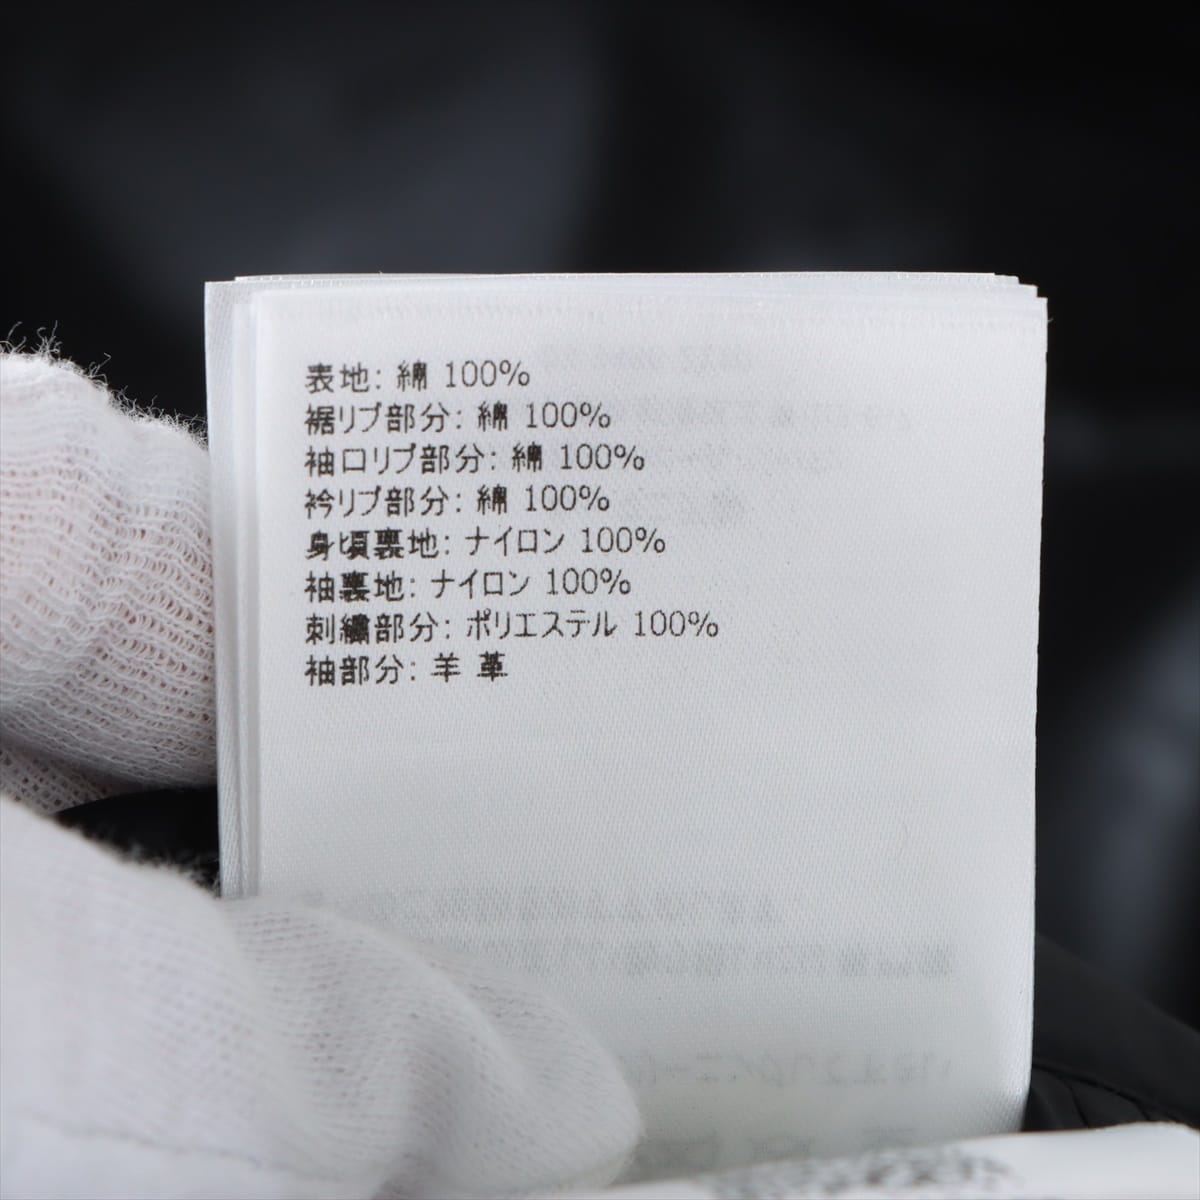 Moncler Genius Fragment RAGGAE 18 years Cotton & leather Blouson 1 Men's Black × White  Hiroshi Fujiwara